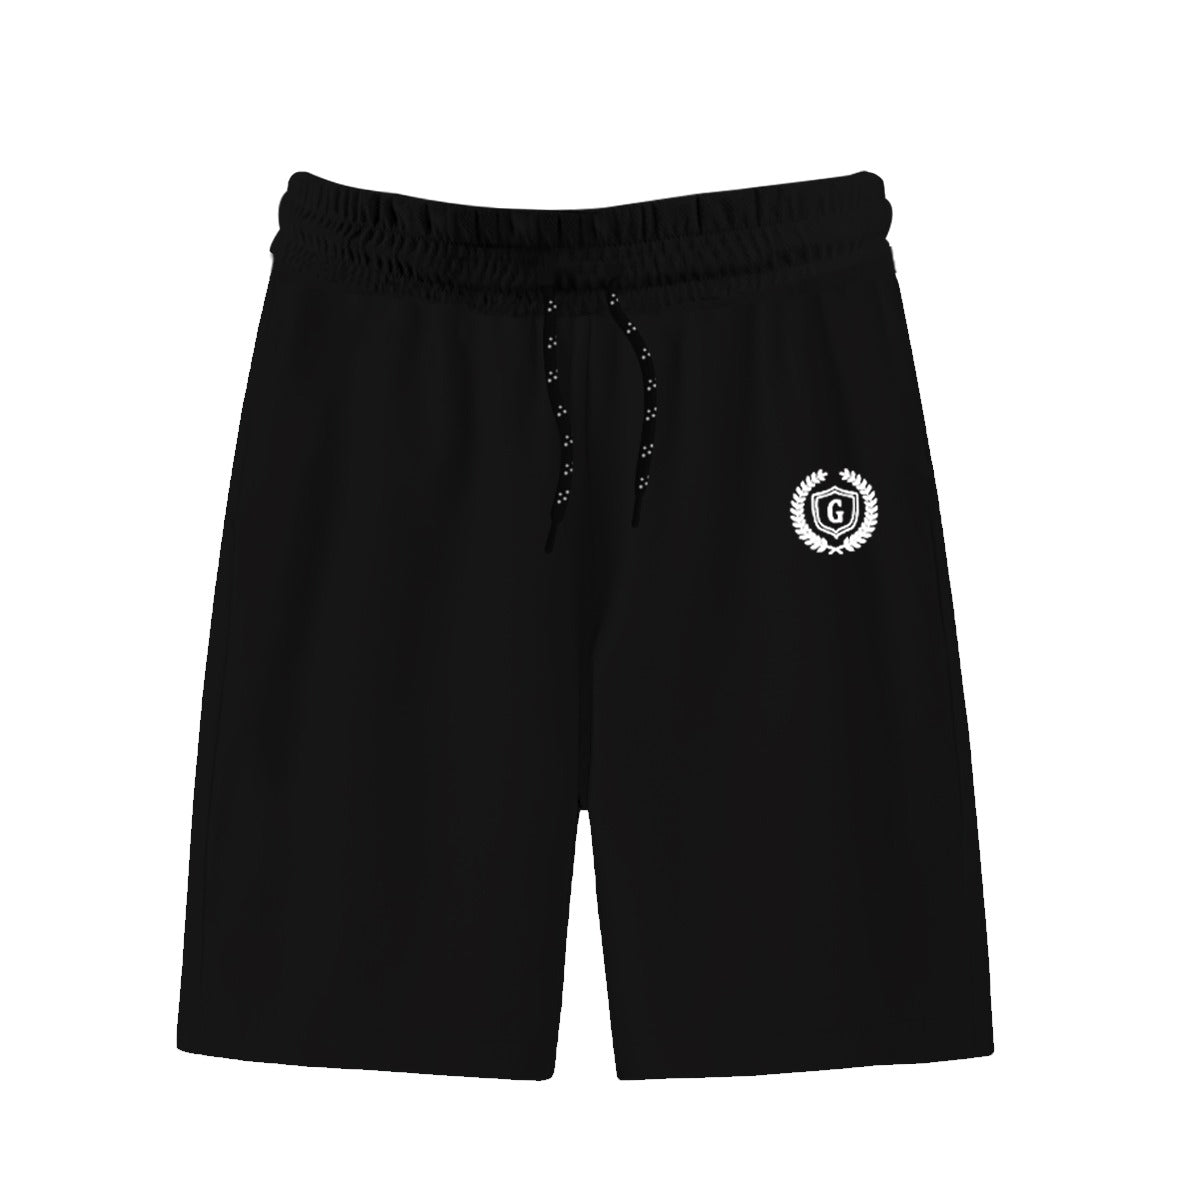 HG Signature Emb Three Quarter Shorts | Black